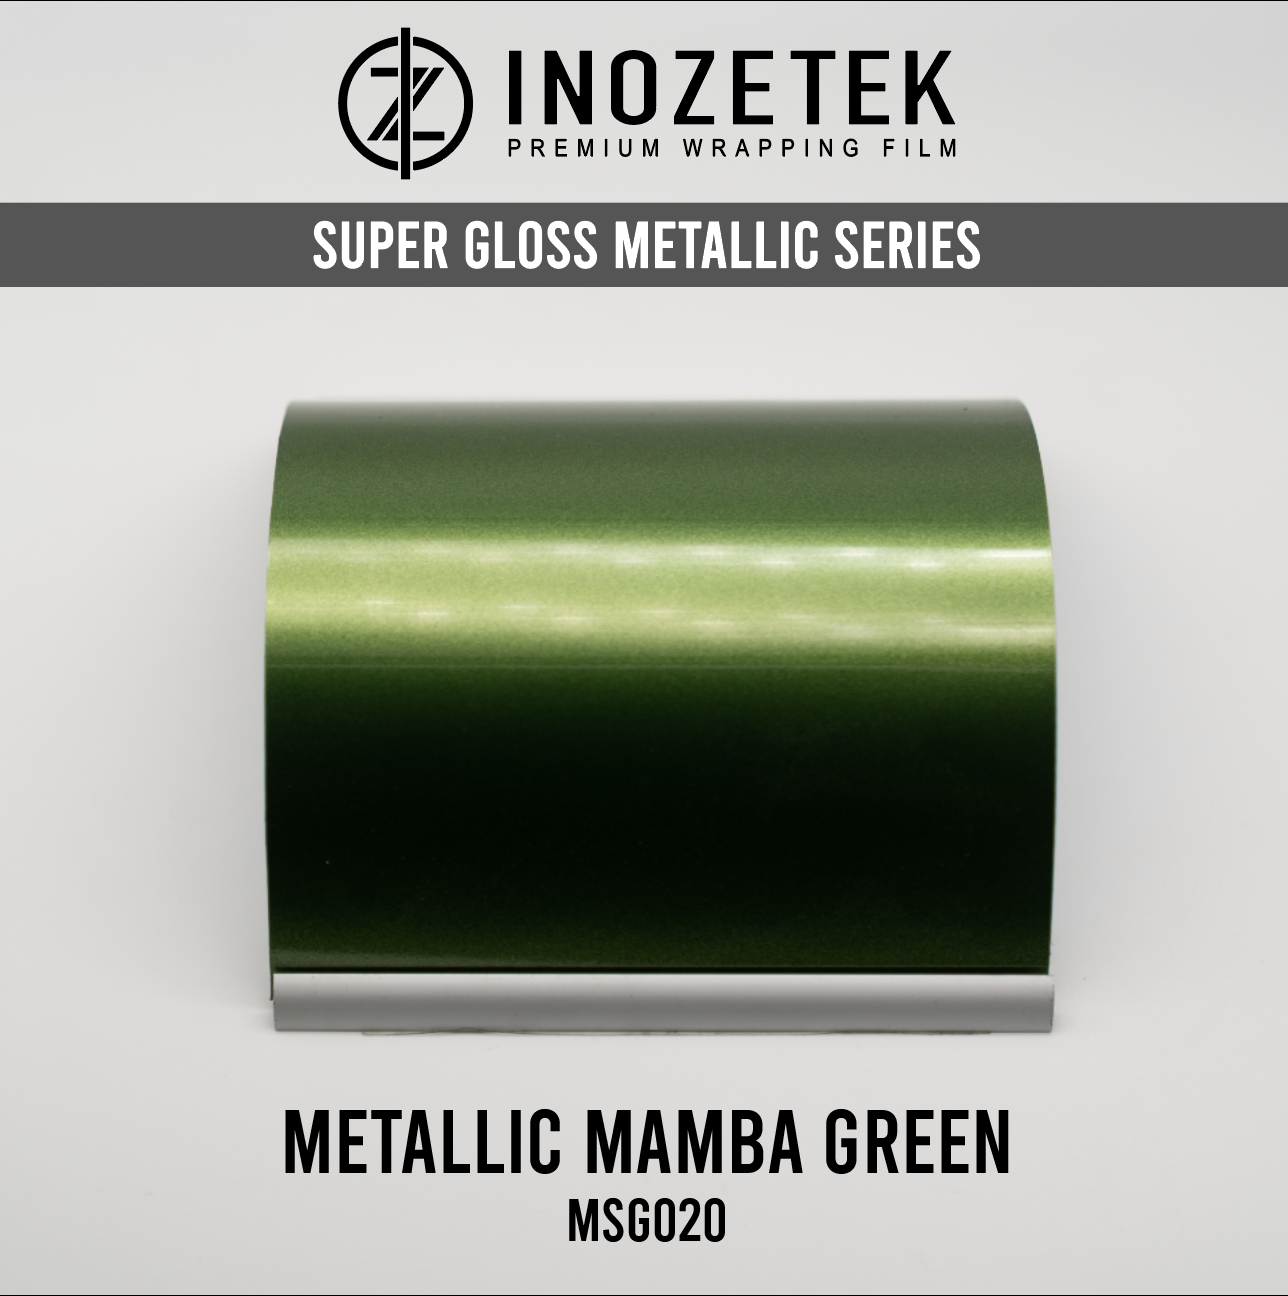 Supergloss Metallic Mamba Green - Inozetek USA